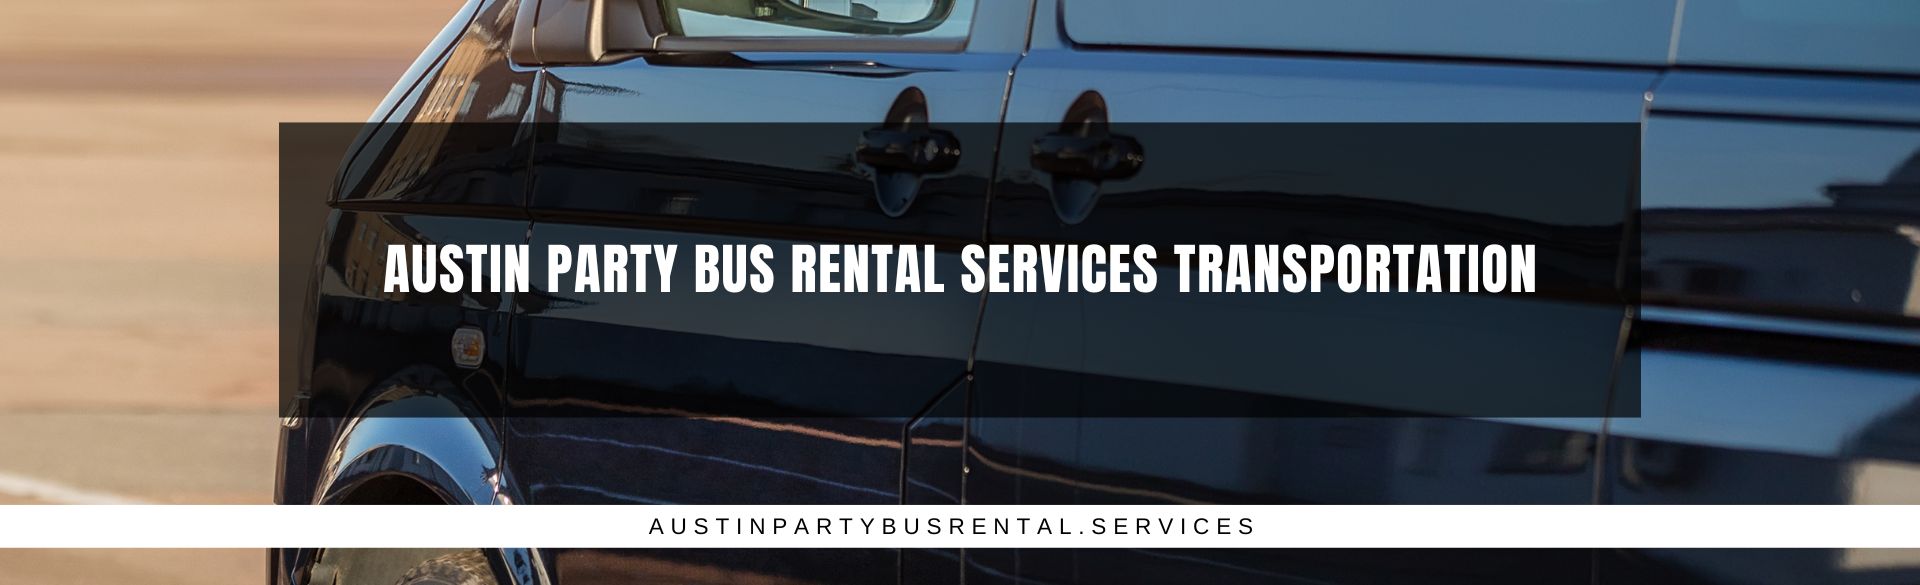 Austin Party Bus Rental Services Transportation